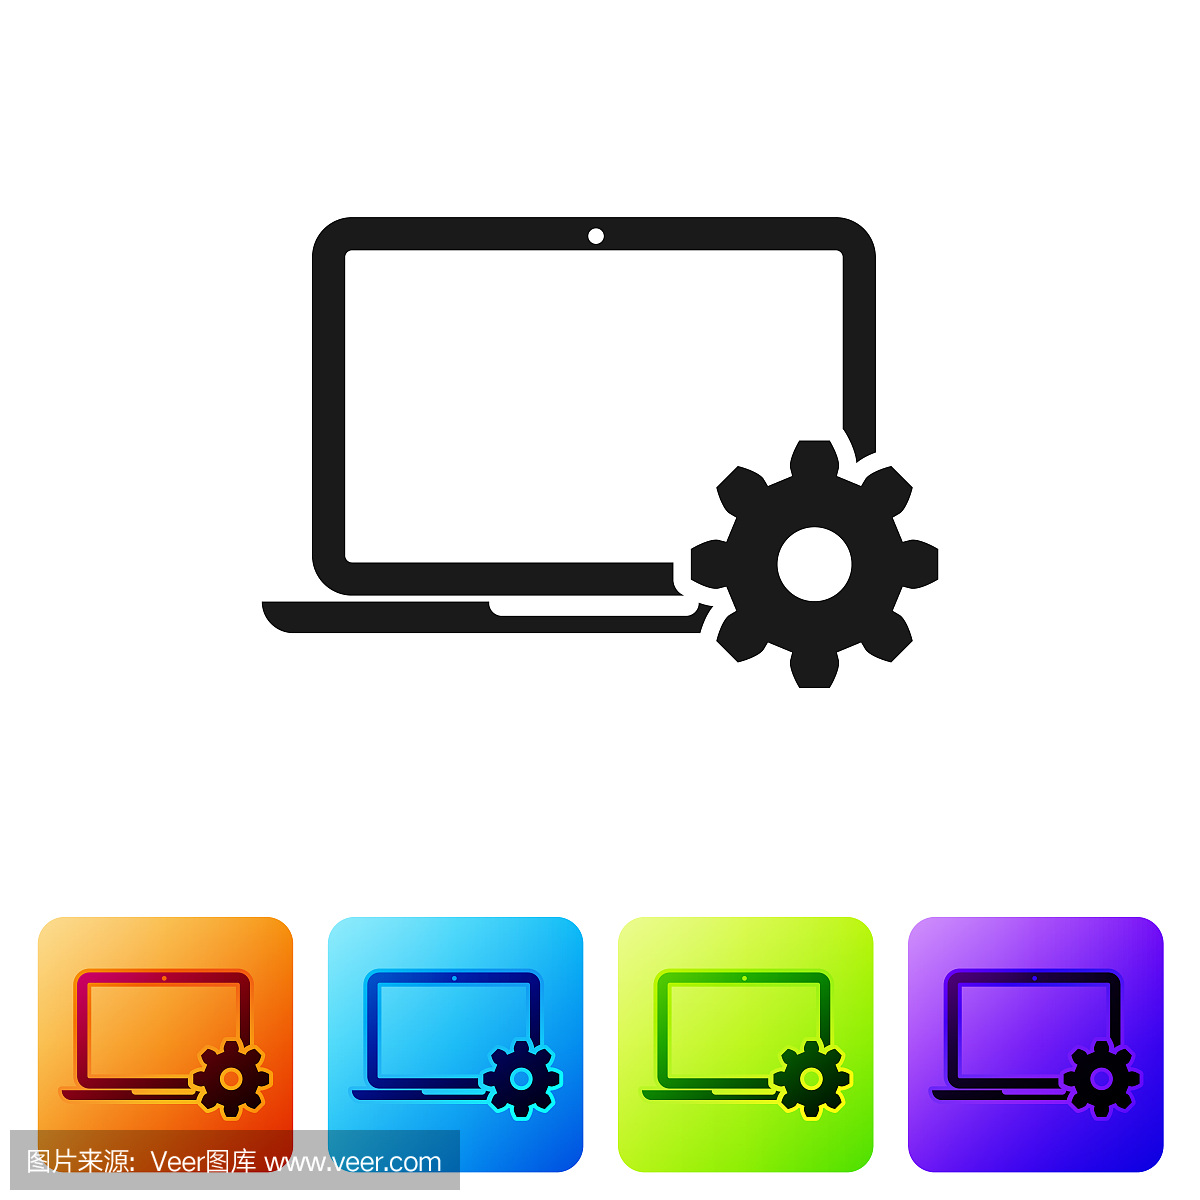 黑色笔记本电脑和齿轮图标上的白色背景。笔记本电脑服务理念。调整应用程序,设置选项,维护,修复,固定笔记本概念。设置图标在颜色方形按钮。矢量图